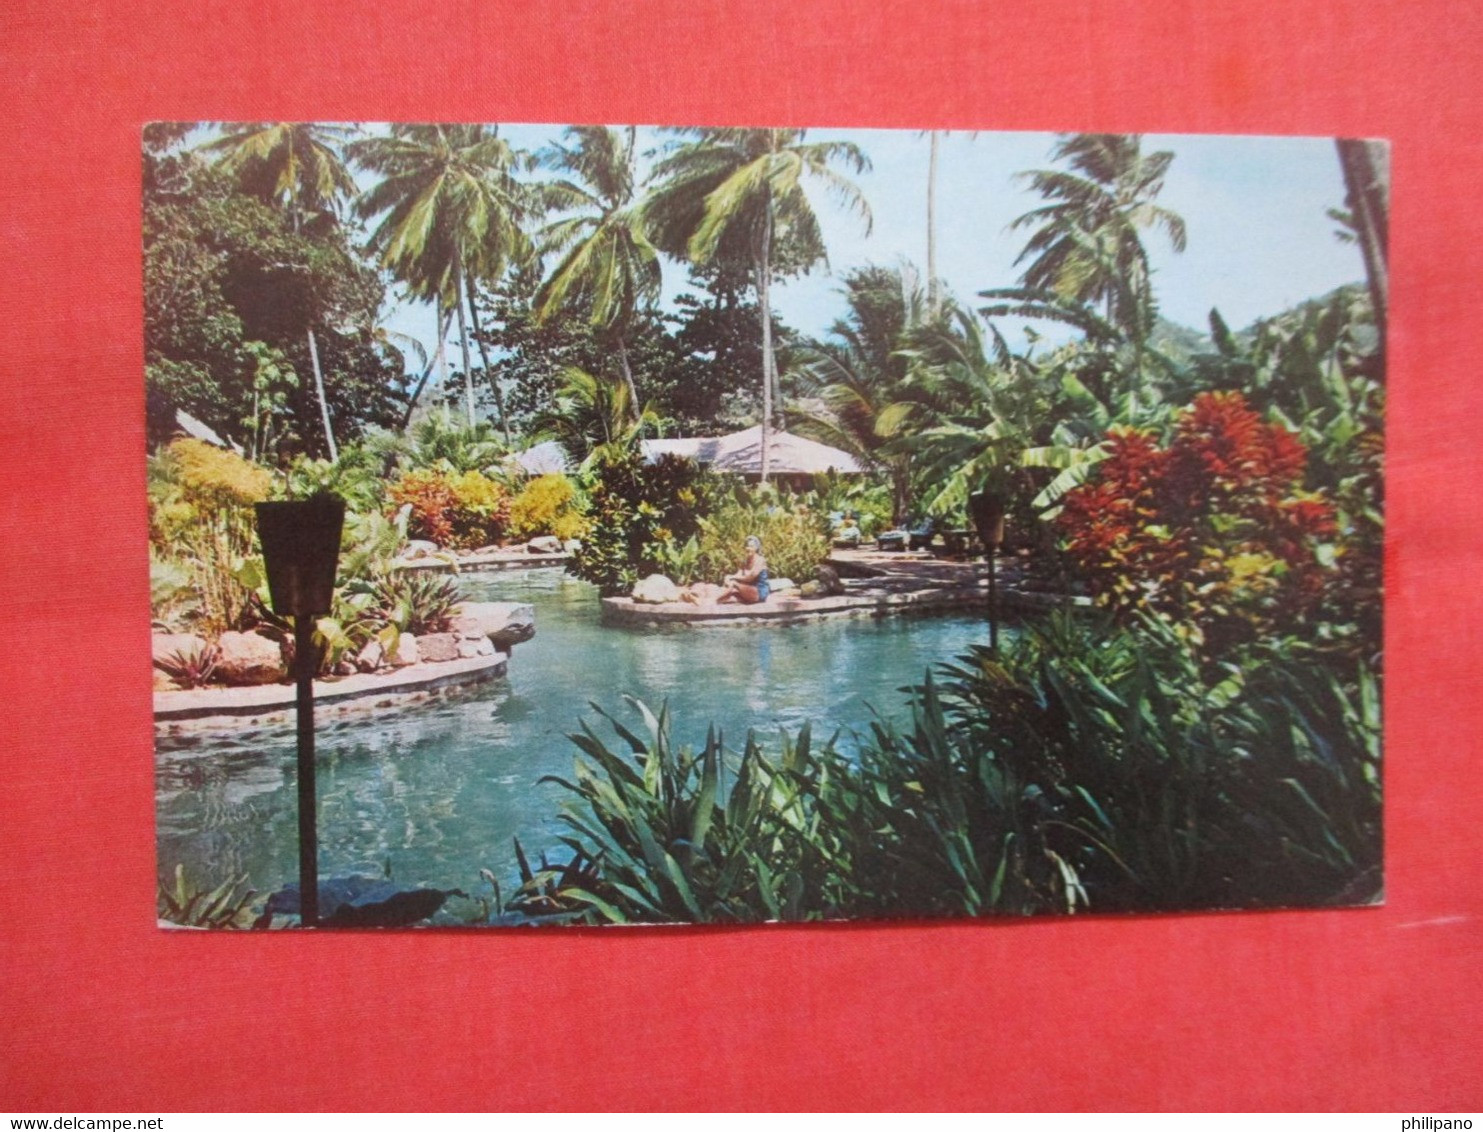 Young Island Saint Vincent & The Grenadines  America > Antilles > Saint    Has  Stamp &. Cancel.       Ref 5783 - Saint-Vincent-et-les Grenadines